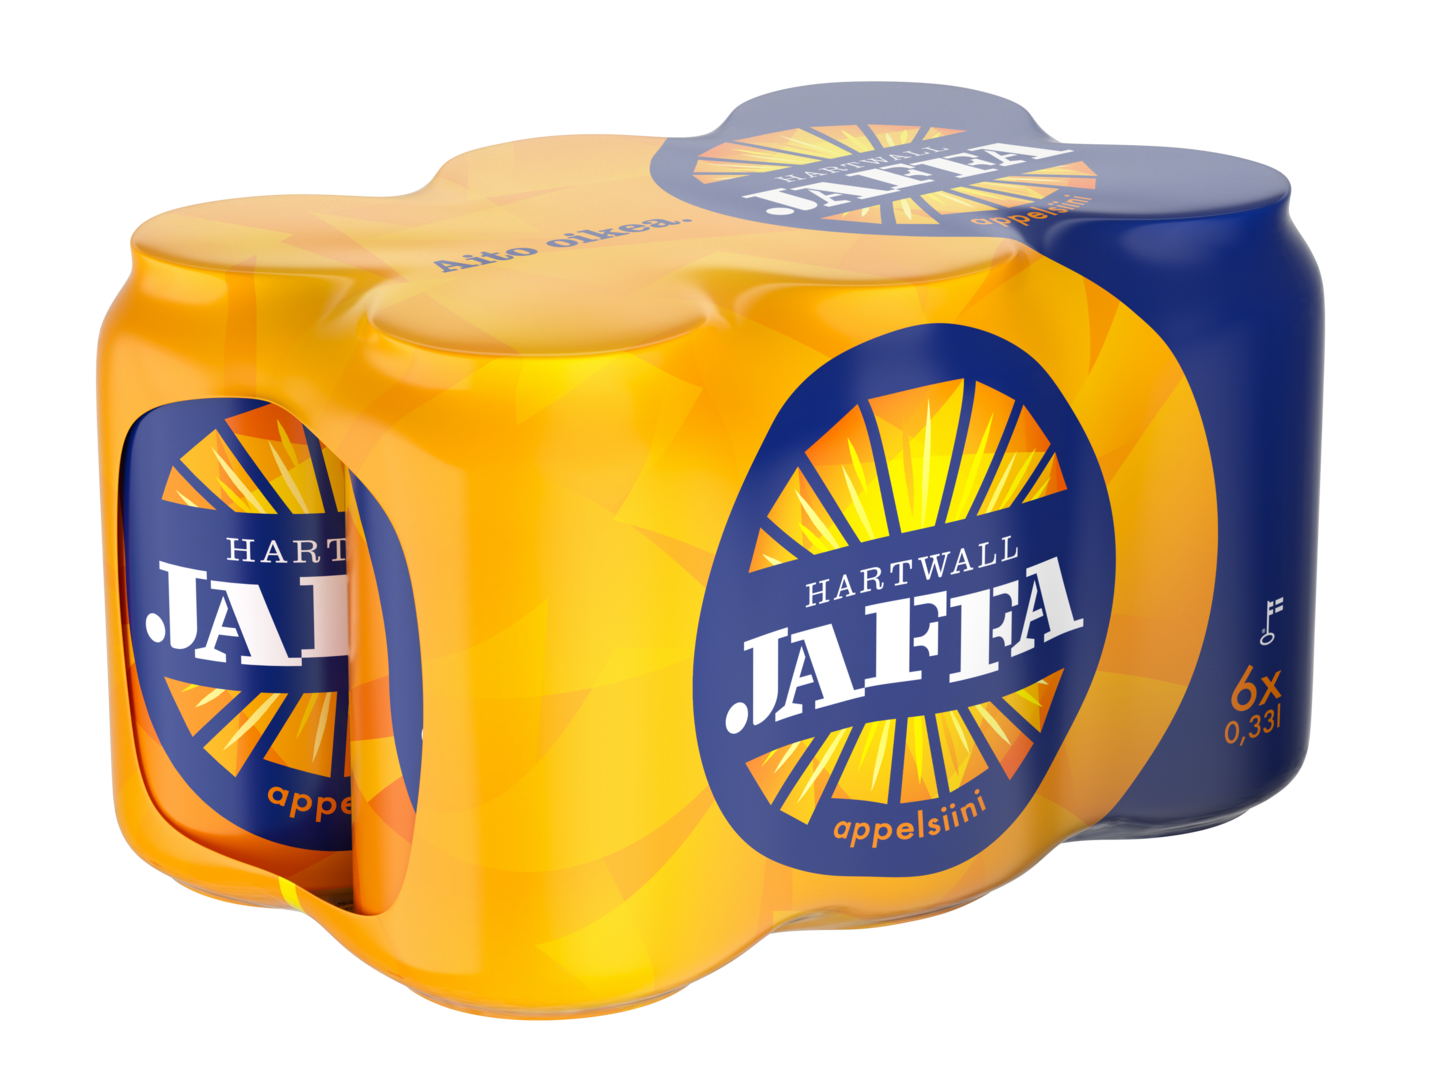 Hartwall Jaffa appelsiini 0,33l tlk 6-pack